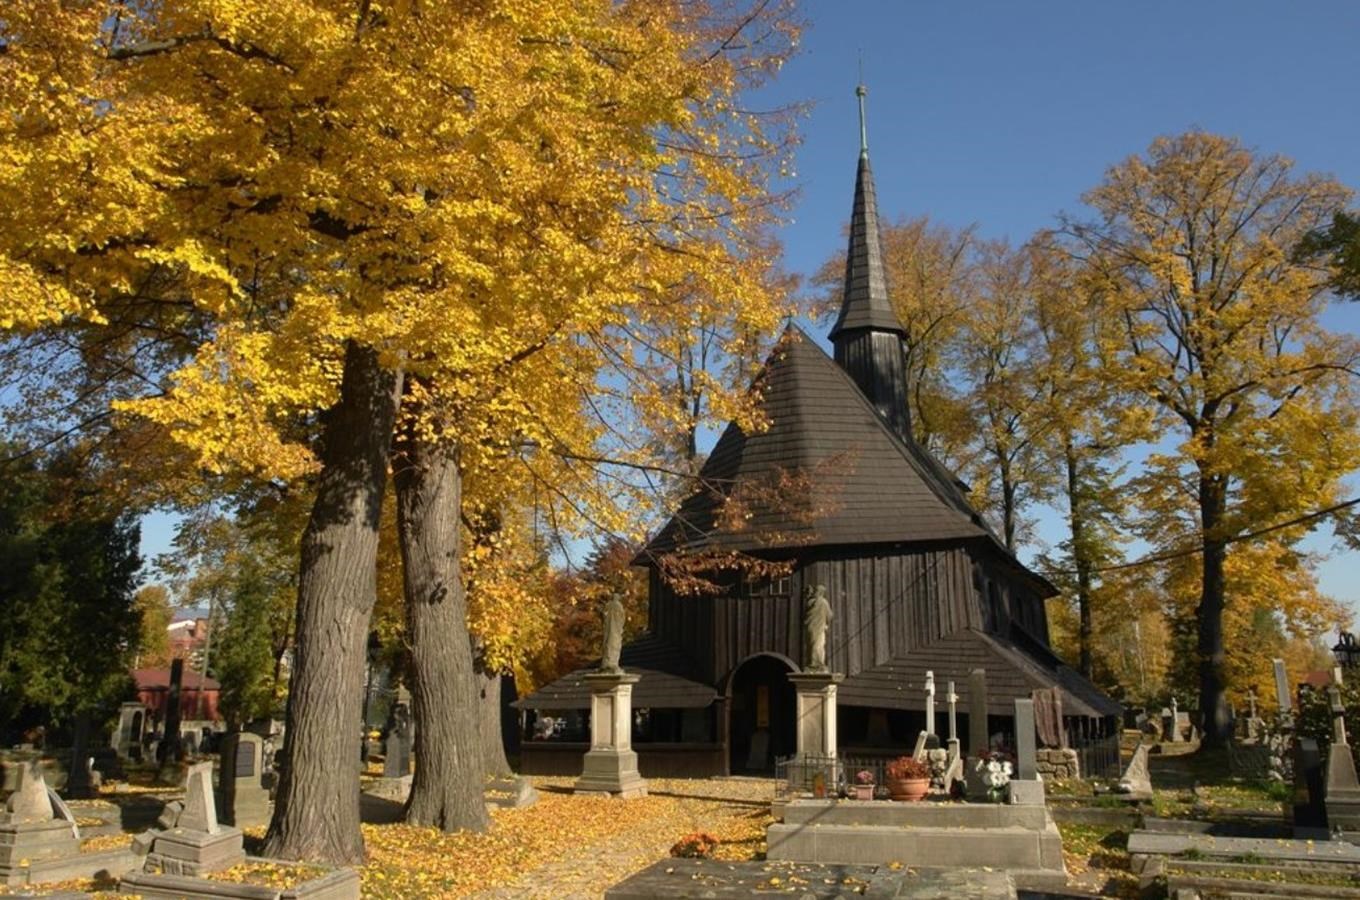 Hřbitovní kostel Panny Marie v Broumově - unikátní památka lidové architektury